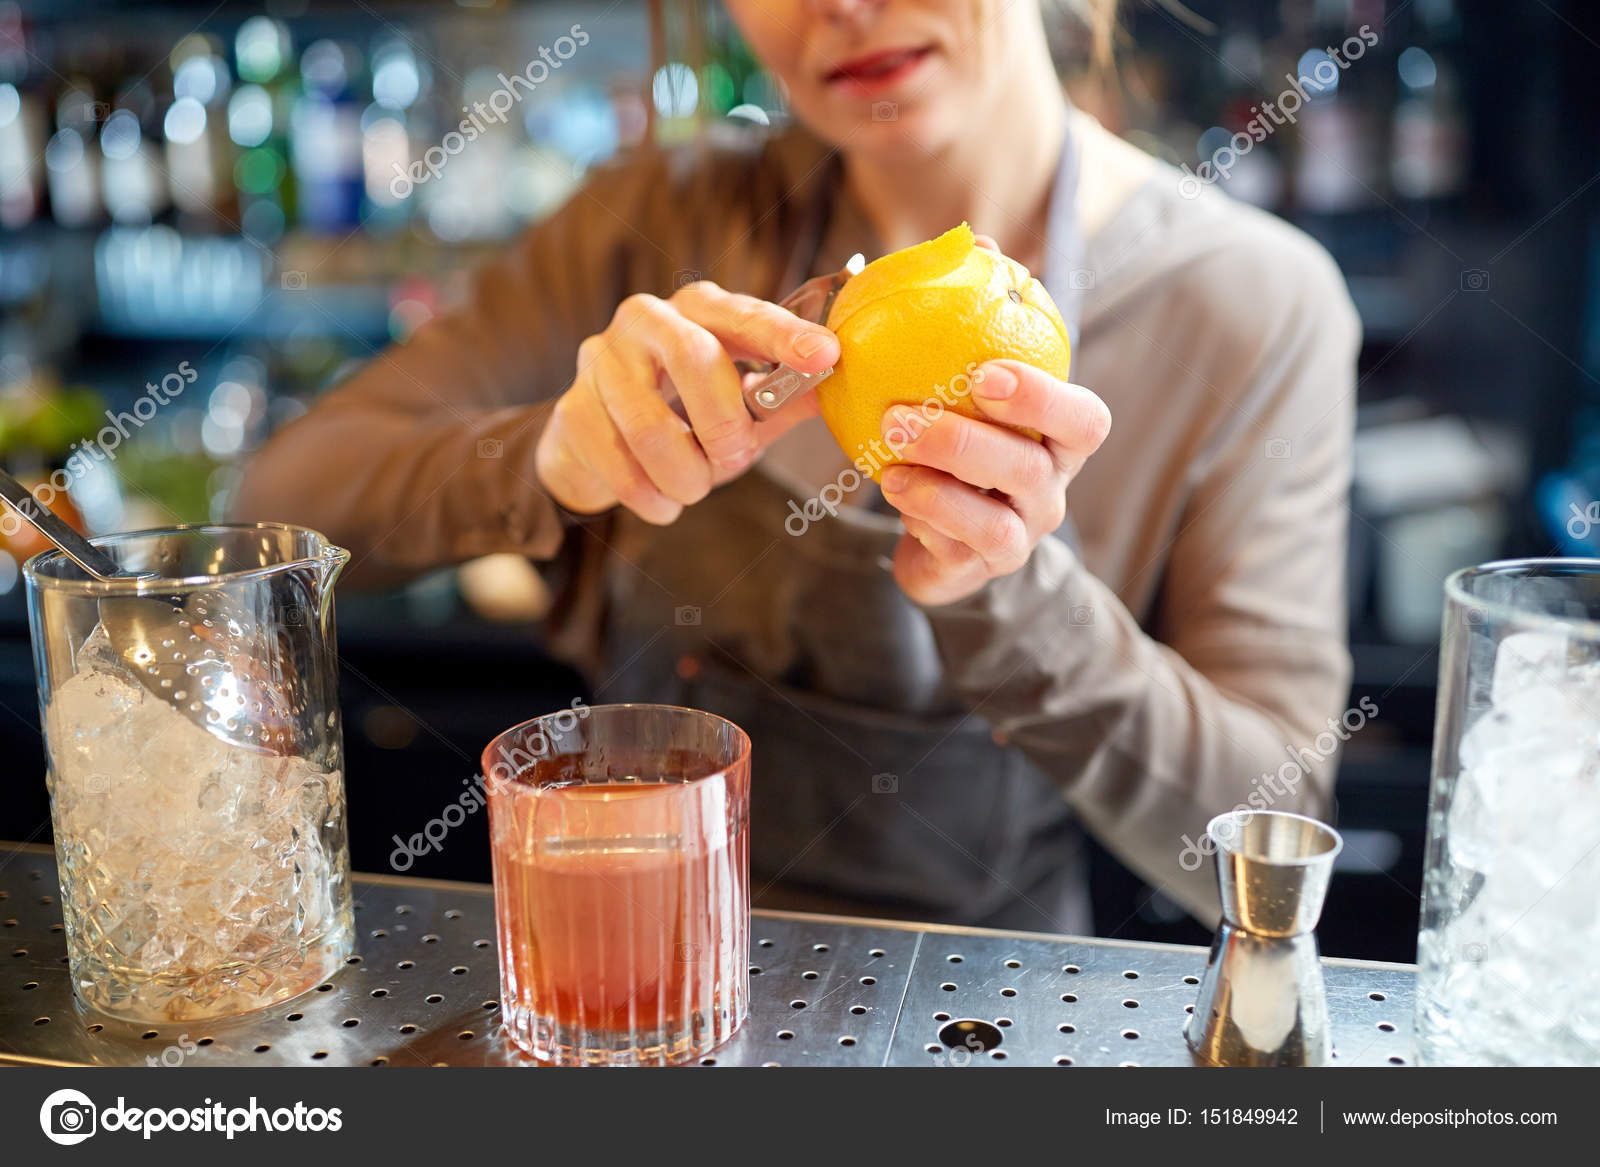 https://st3.depositphotos.com/1017986/15184/i/1600/depositphotos_151849942-stock-photo-bartender-peels-orange-peel-for.jpg